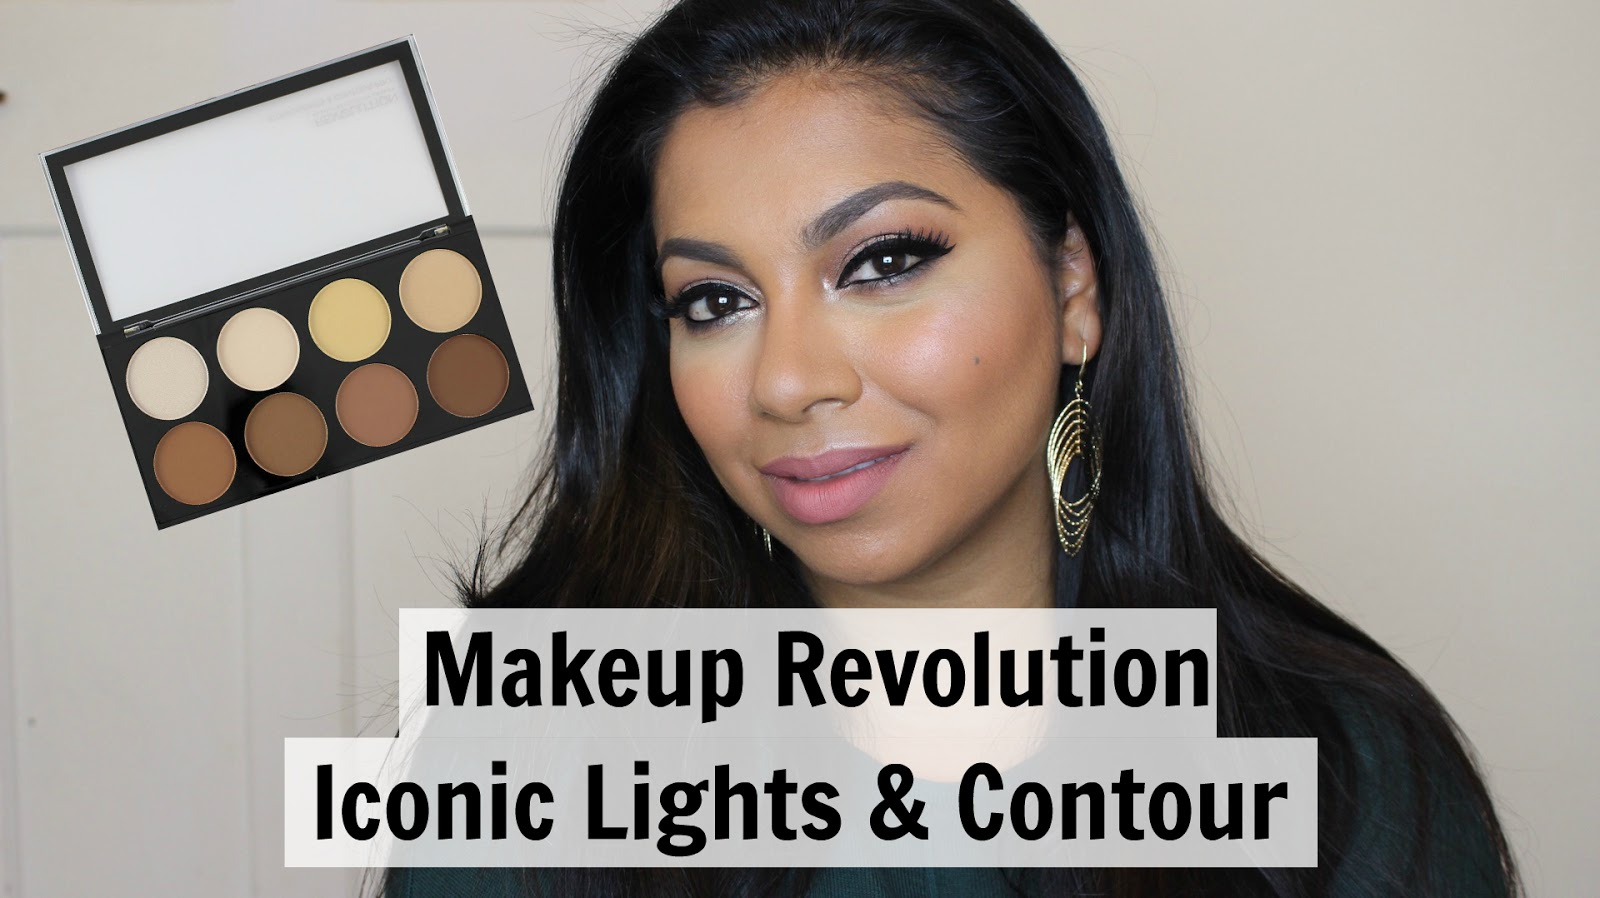 Makeup revolution iconic lights & contour pro